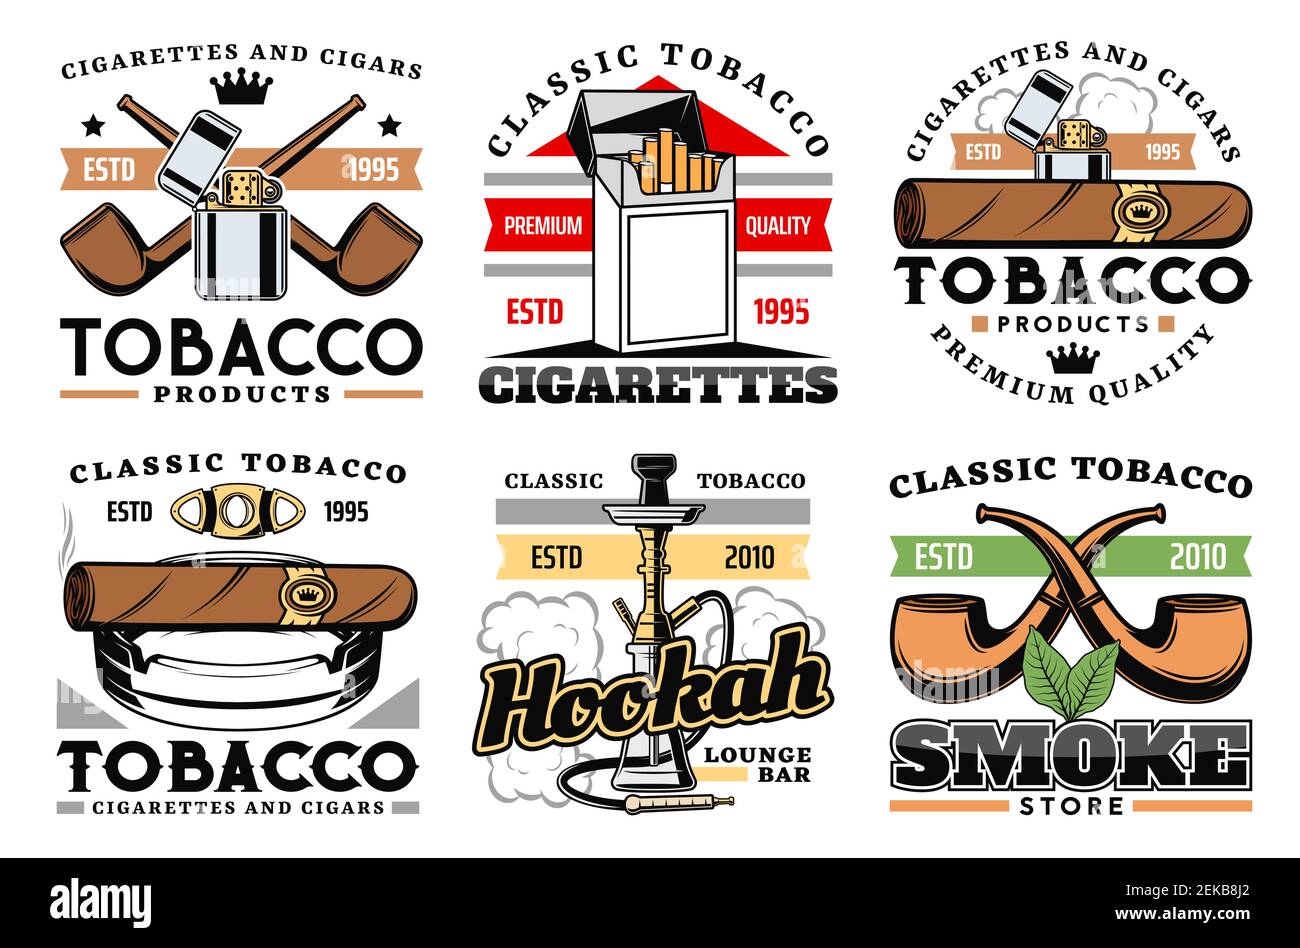 Zigarren, Zigaretten und Premium-Qualität Tabakfabrik oder Firmenetiketten. Vektor-Ikonen des Rauchens Pfeifen Speicher, Shisha und Lounge Bar Schild, vint Stock Vektor